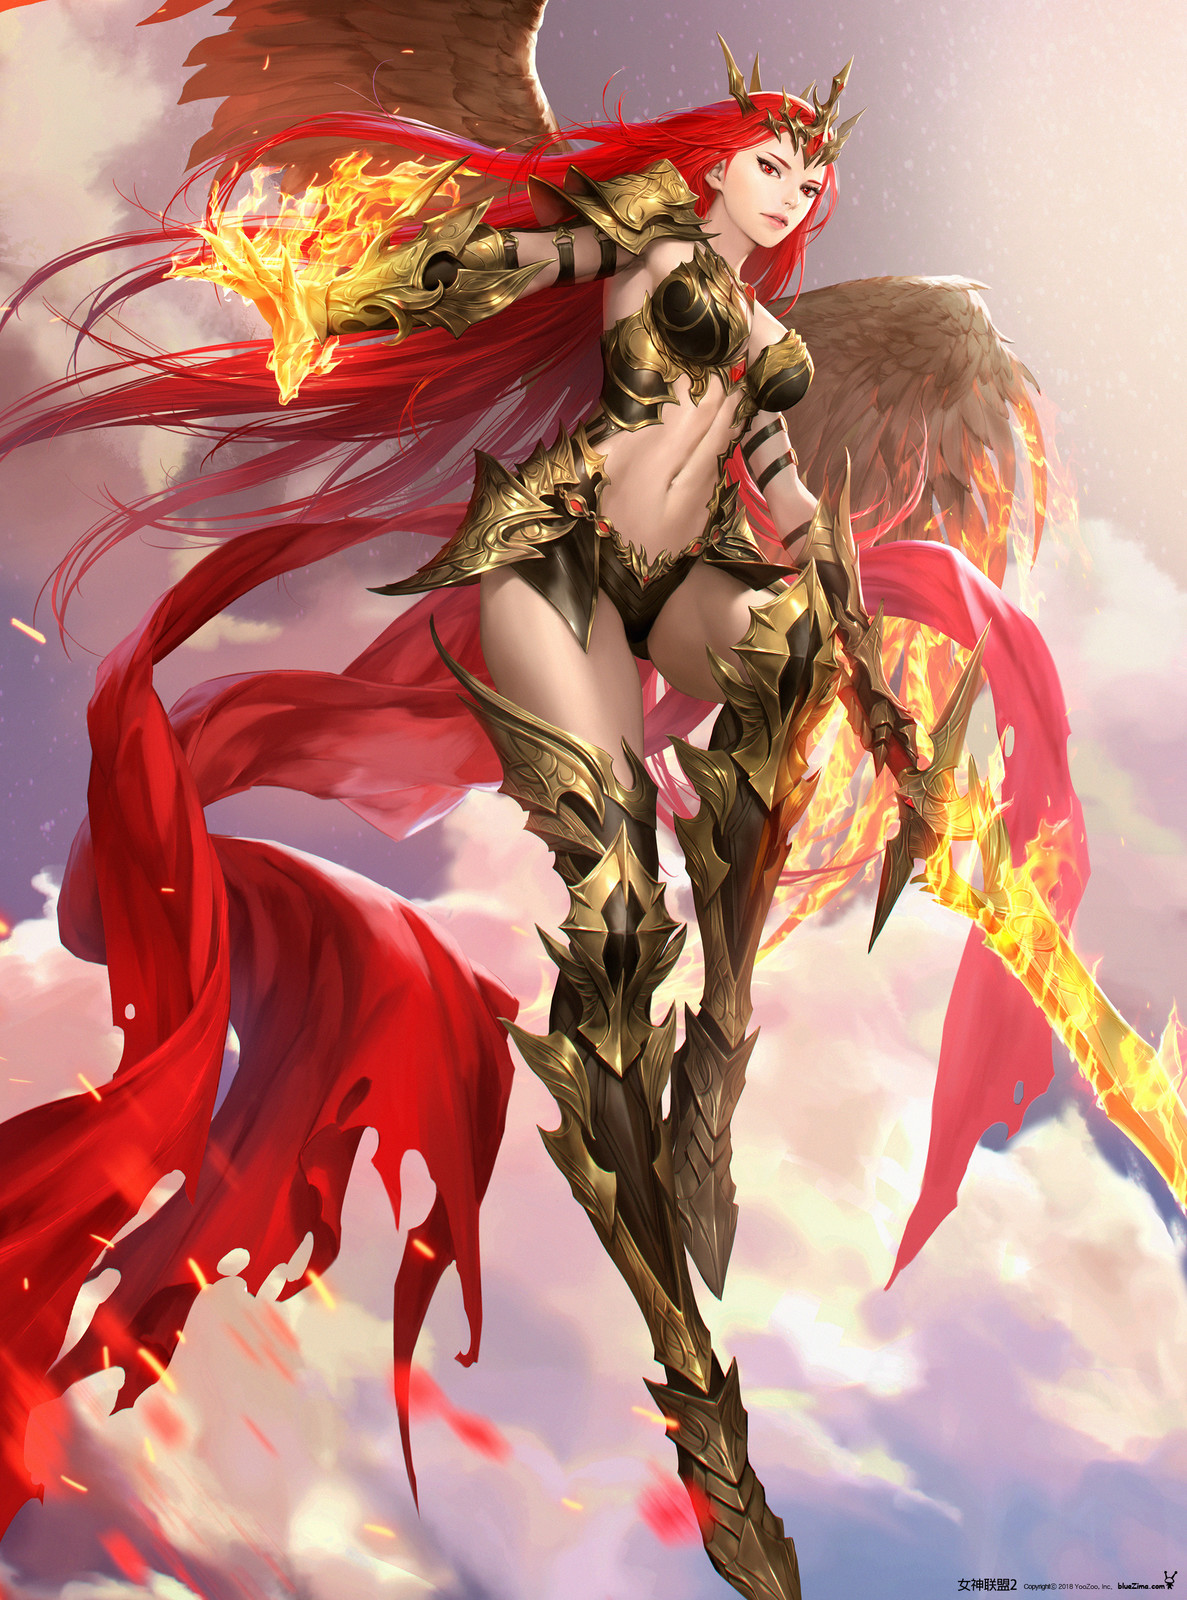 Goddess of Flame